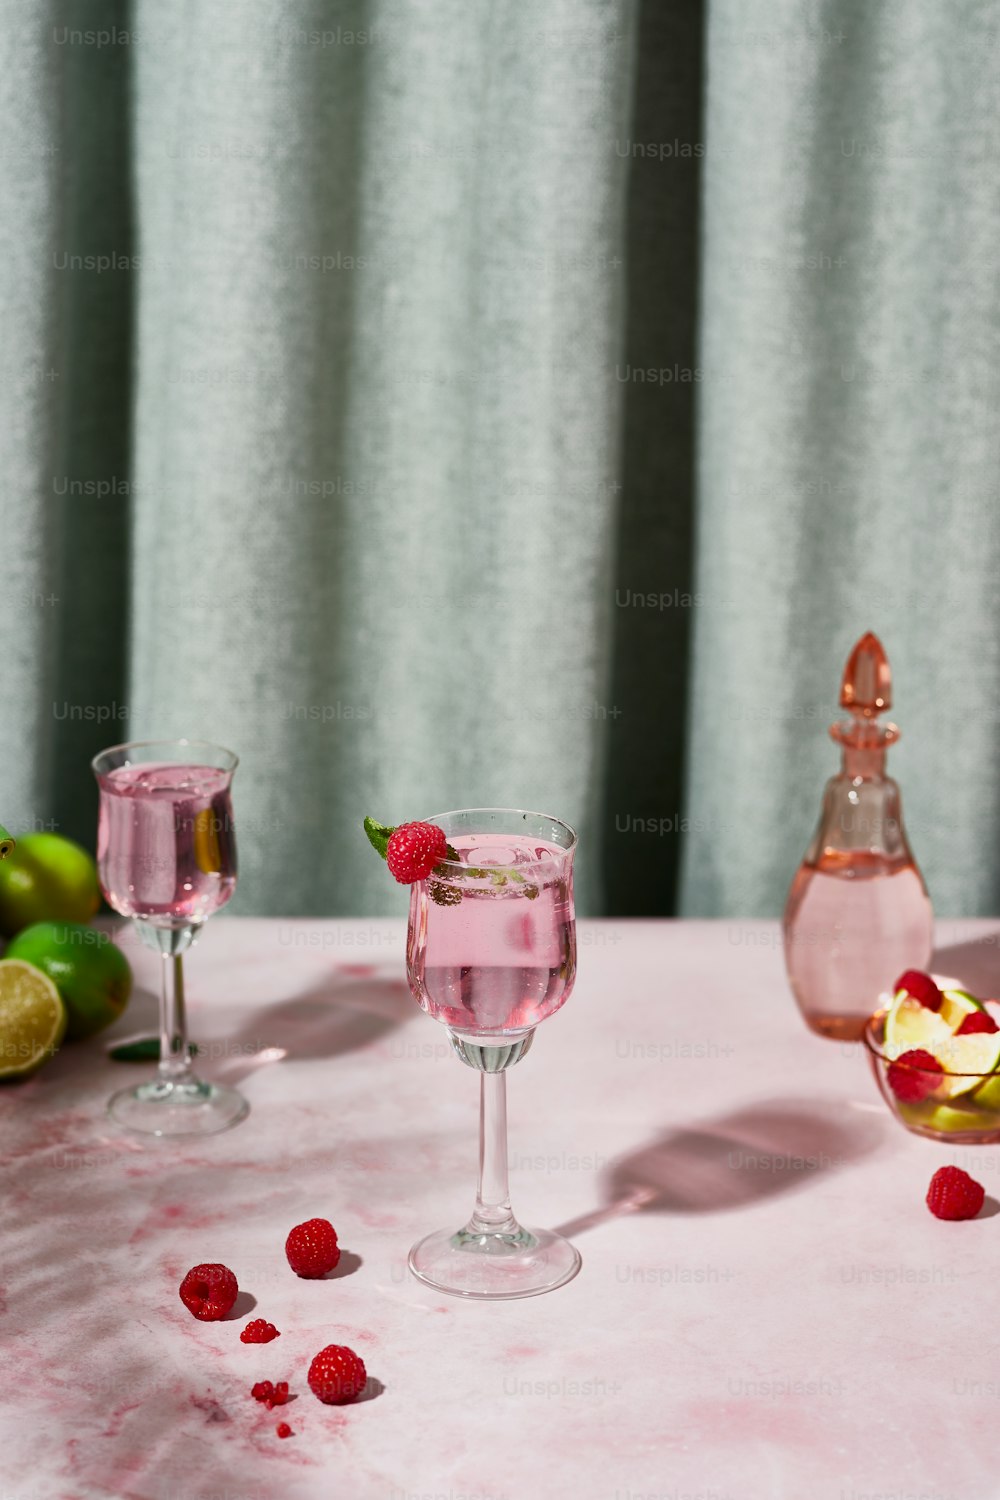 Una mesa cubierta con dos vasos llenos de líquido y frambuesas